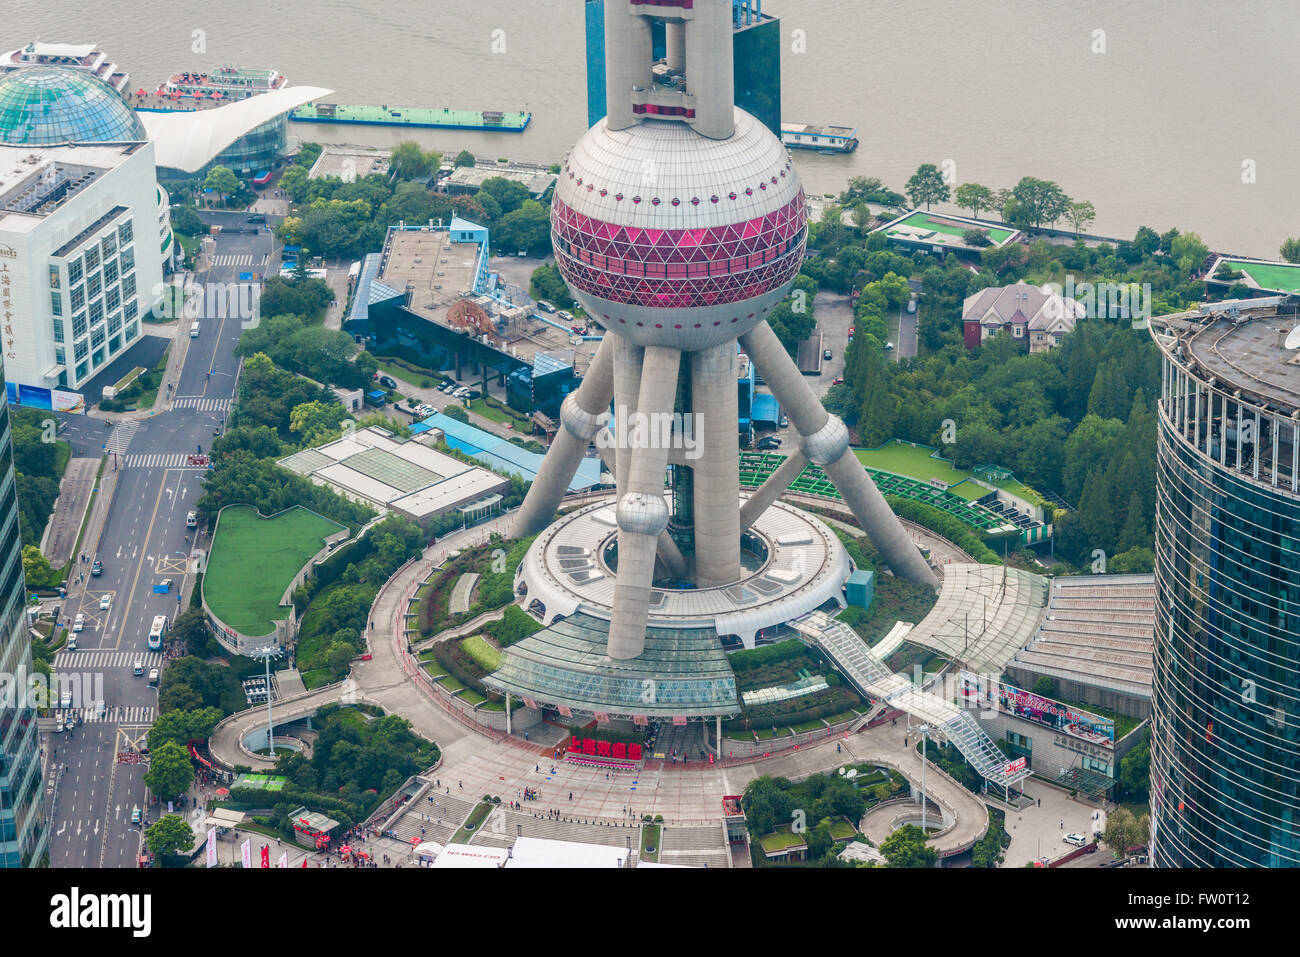 L'Oriental Pearl Tower, vue de la ville de Shanghai Banque D'Images